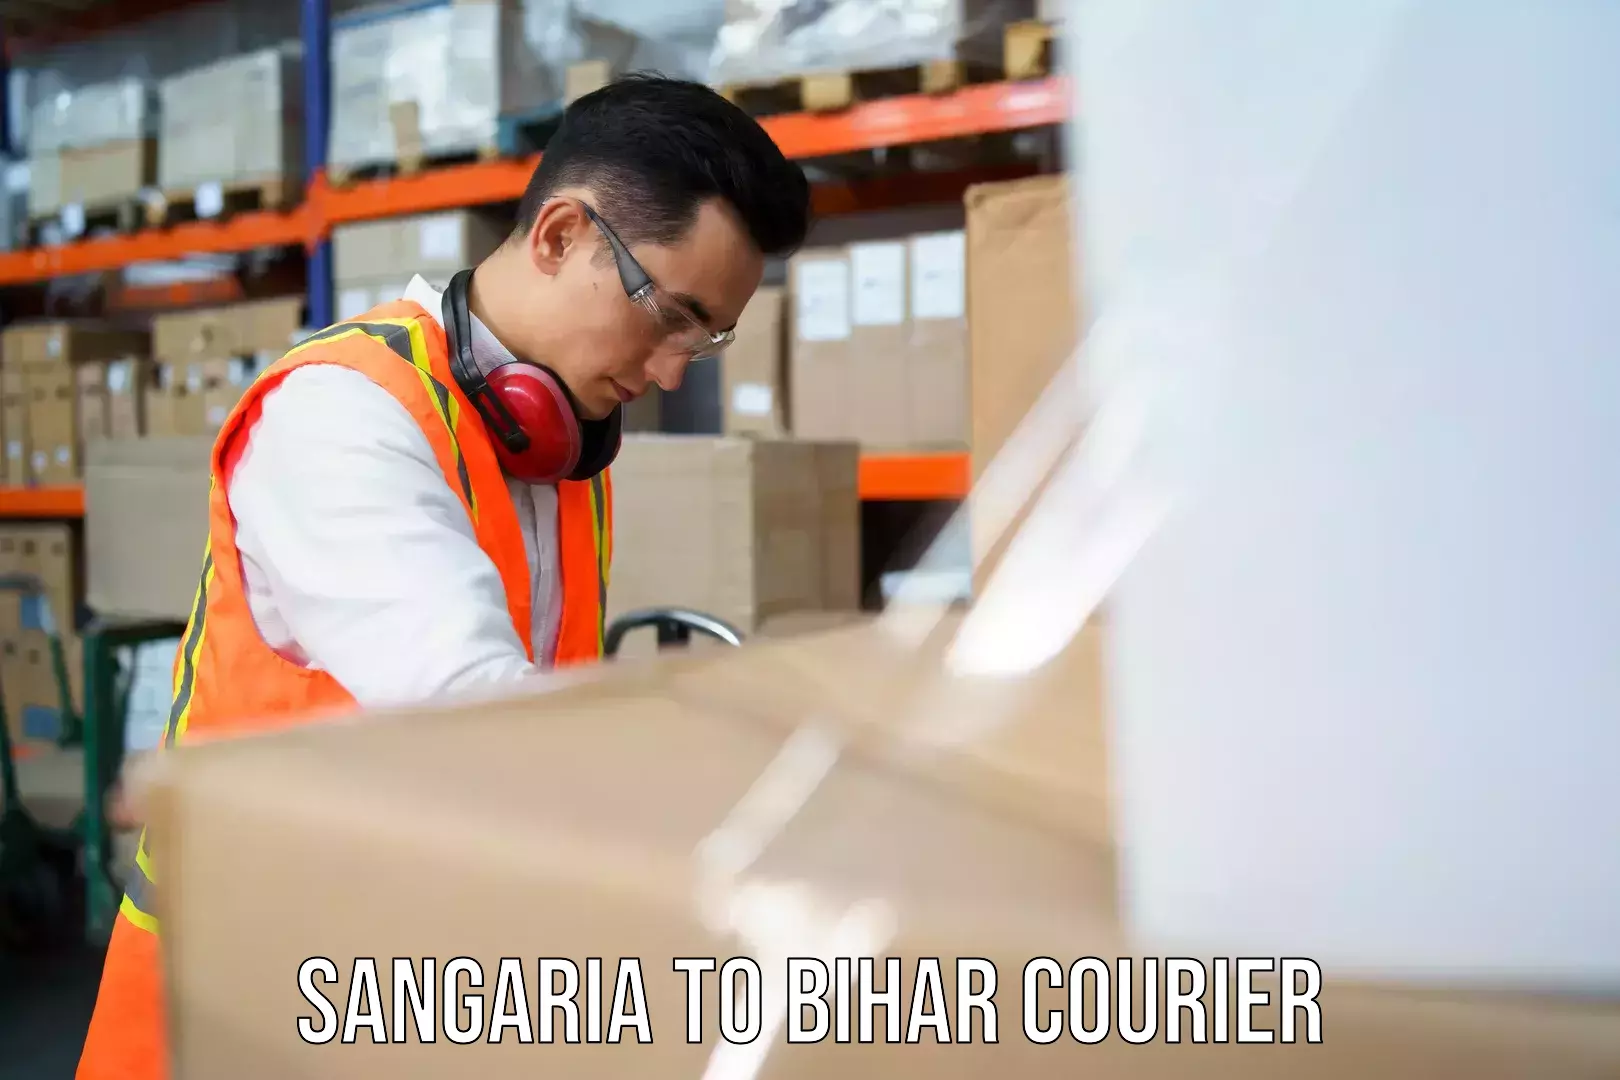 Doorstep delivery service in Sangaria to Bihar